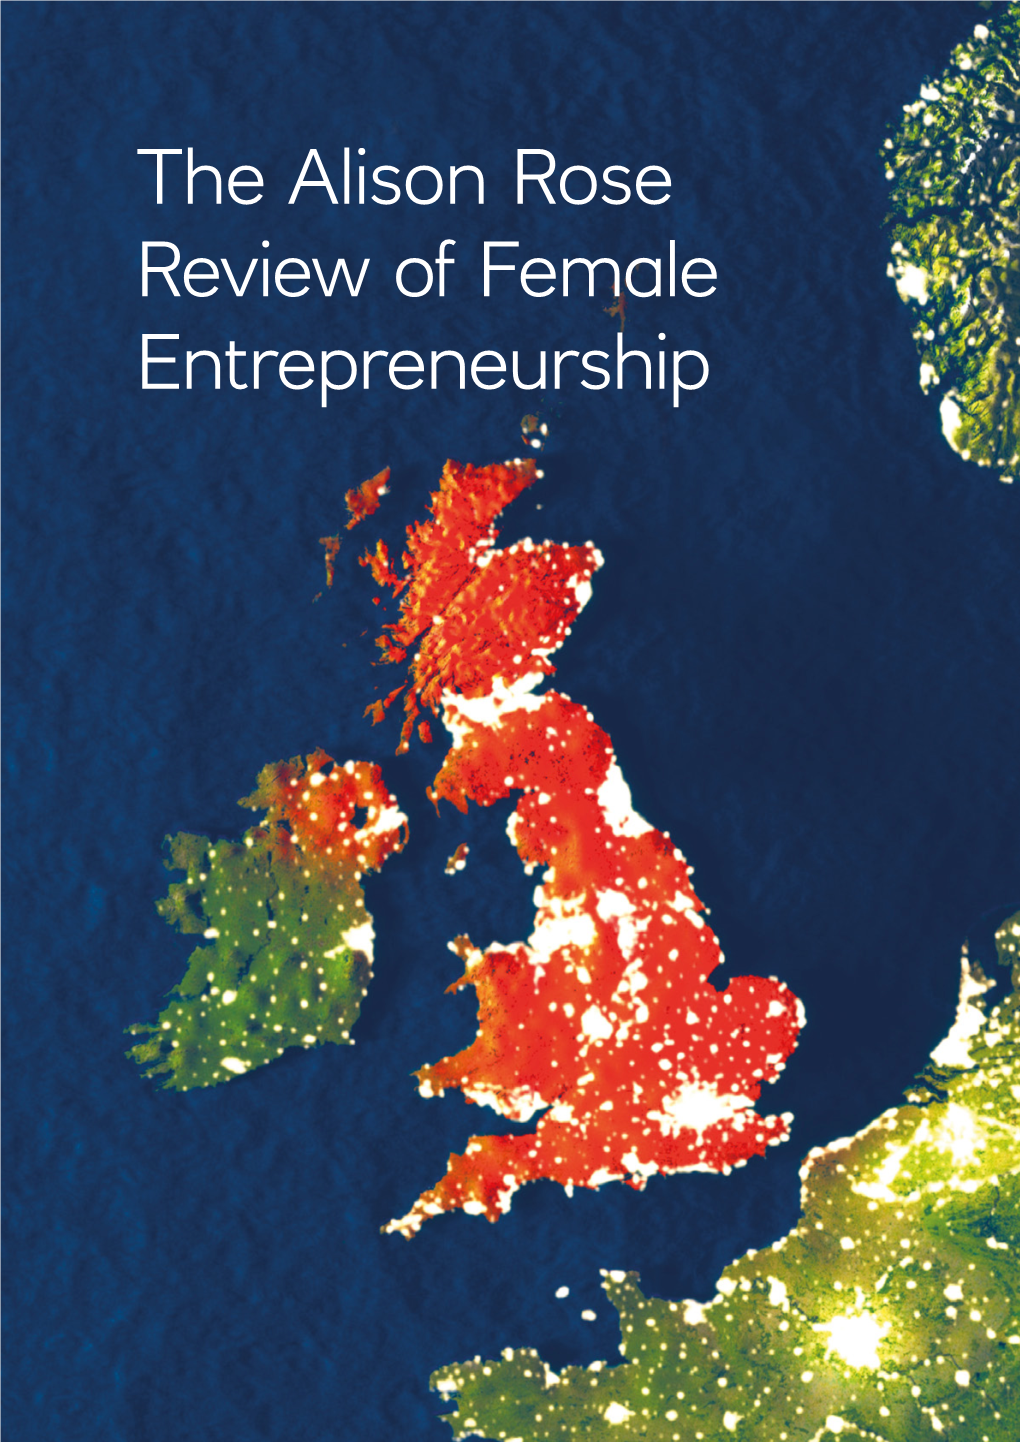 The Rose Review of Female Entrepreneurship